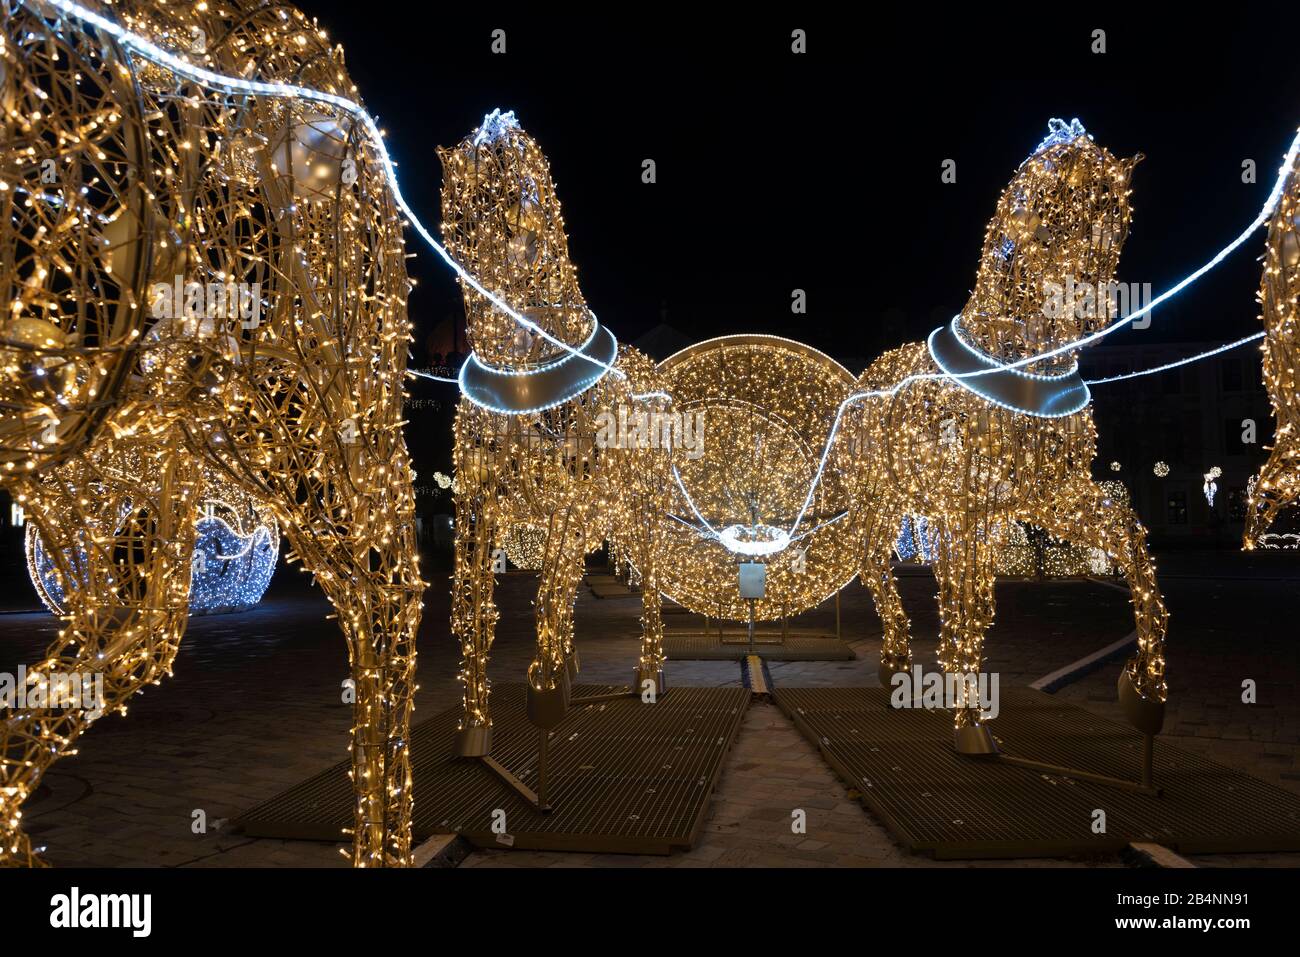 Deutschland, Sachsen-Anhalt, Magdeburg, beleuchtete Pferde stehen auf dem Domplatz, sie zeigen den berühmten Vakuumvertali des Physikers otto-von-Guer Foto Stock